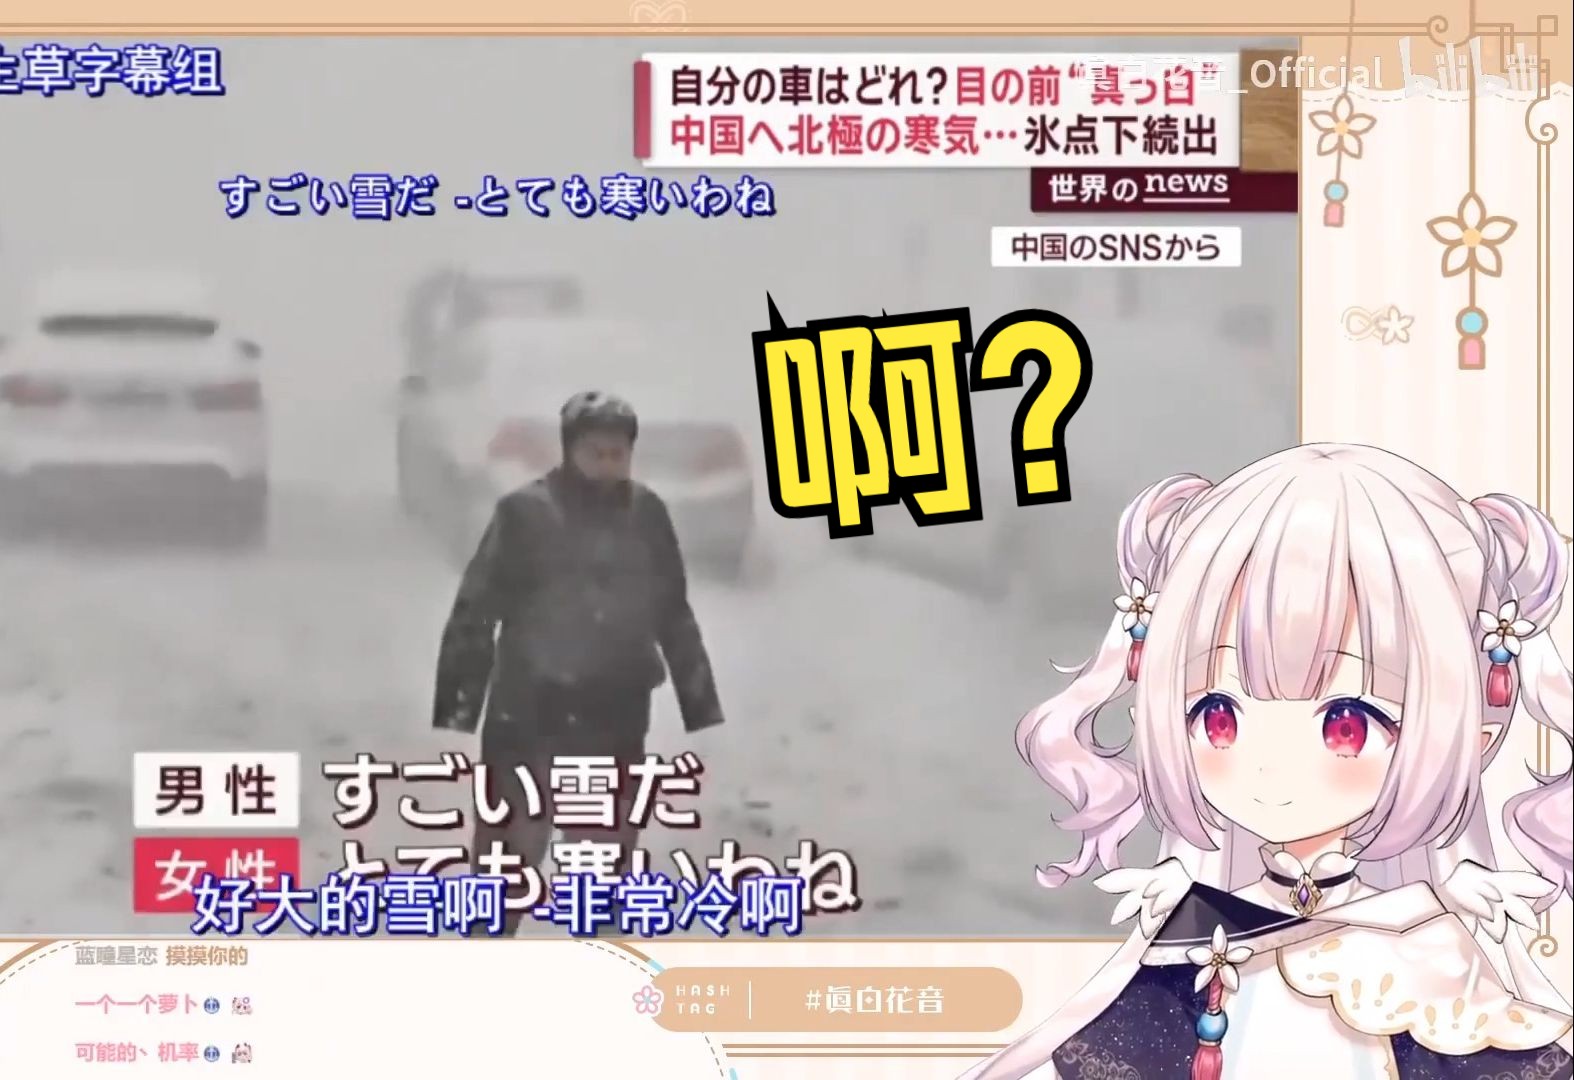 日本萝莉看日本新闻介绍中国大雪 当场被吓傻